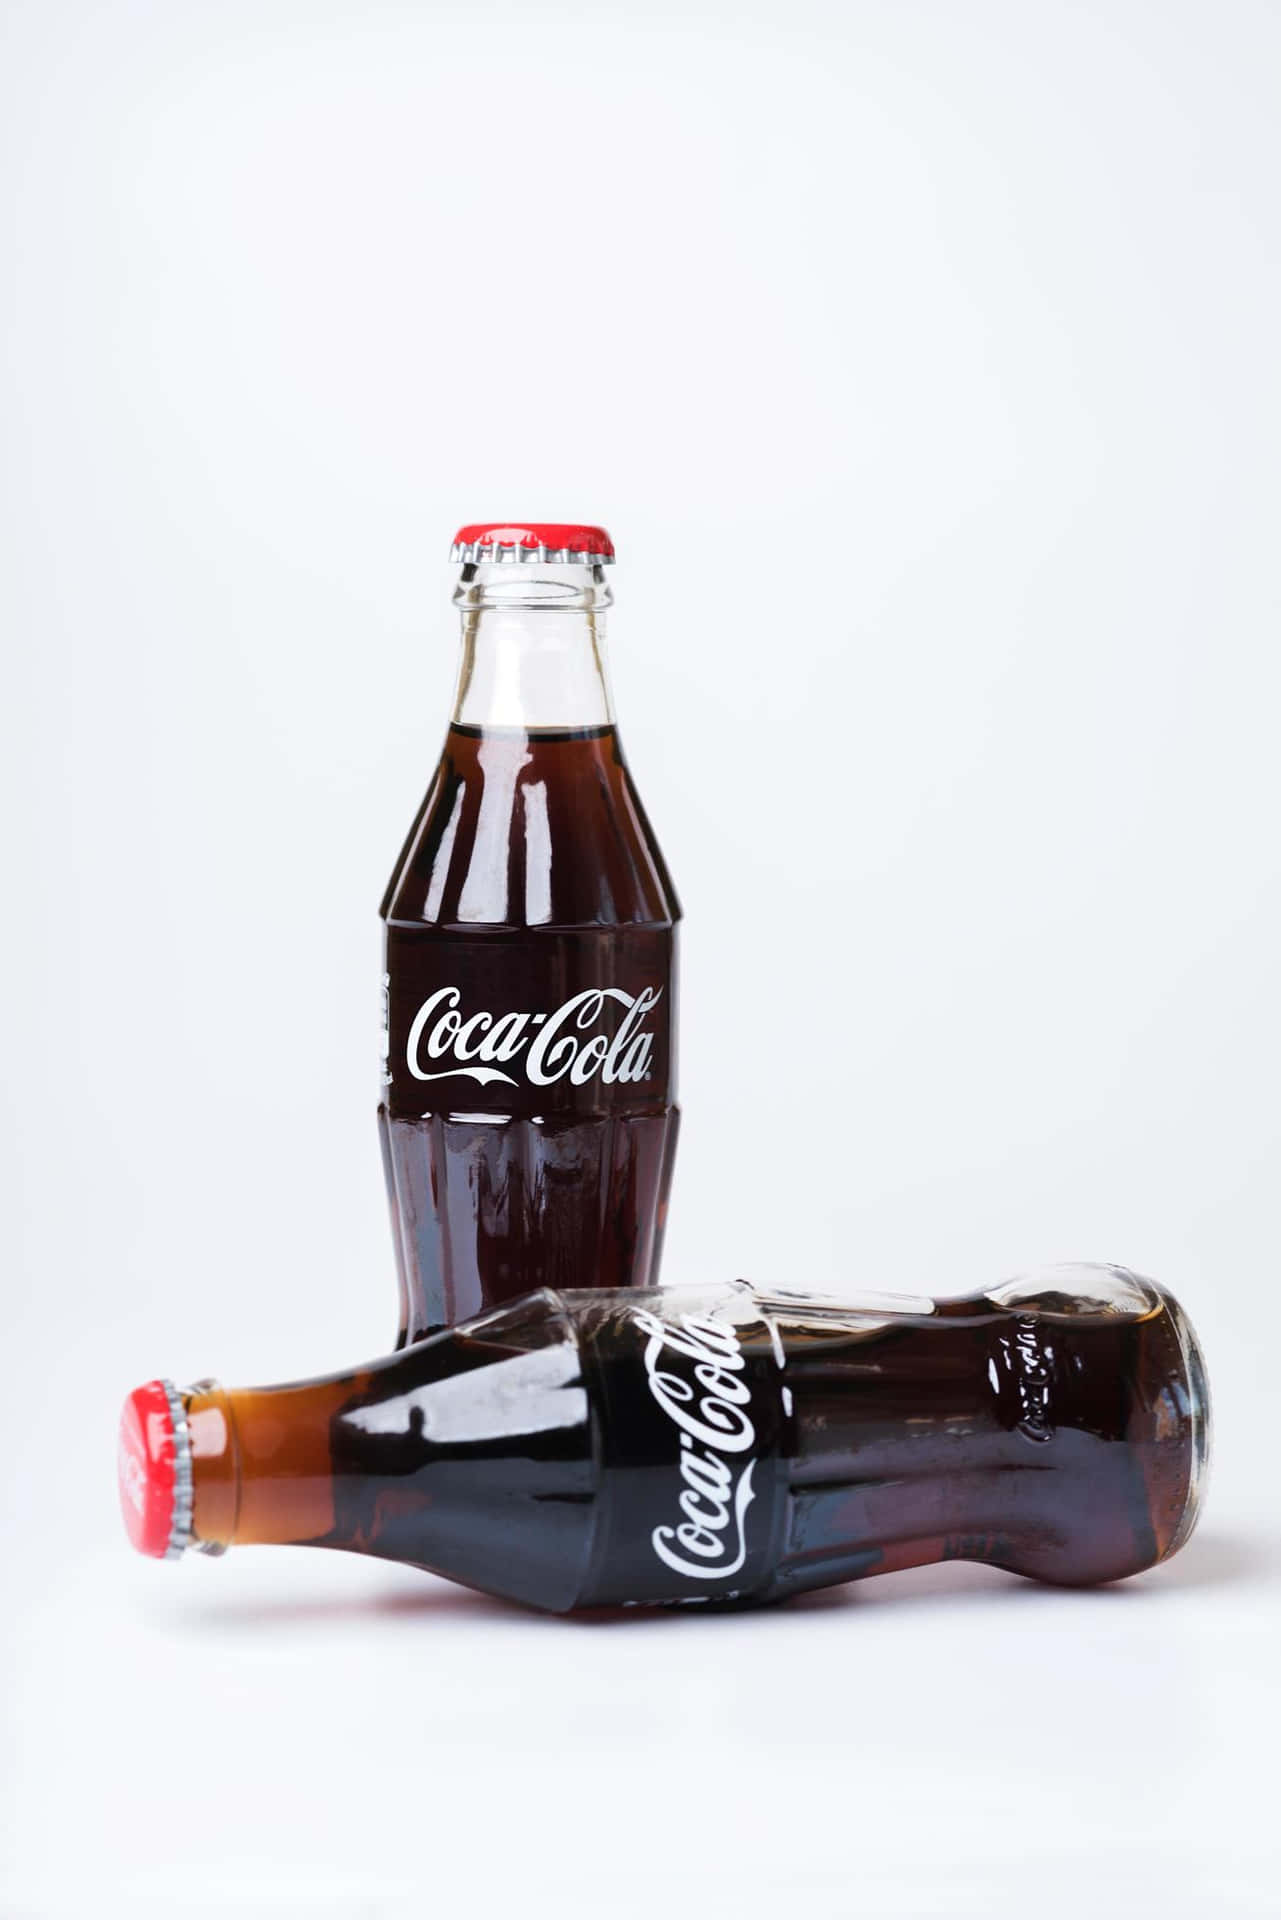 Dosbotellas De Coca Cola Sobre Un Fondo Blanco